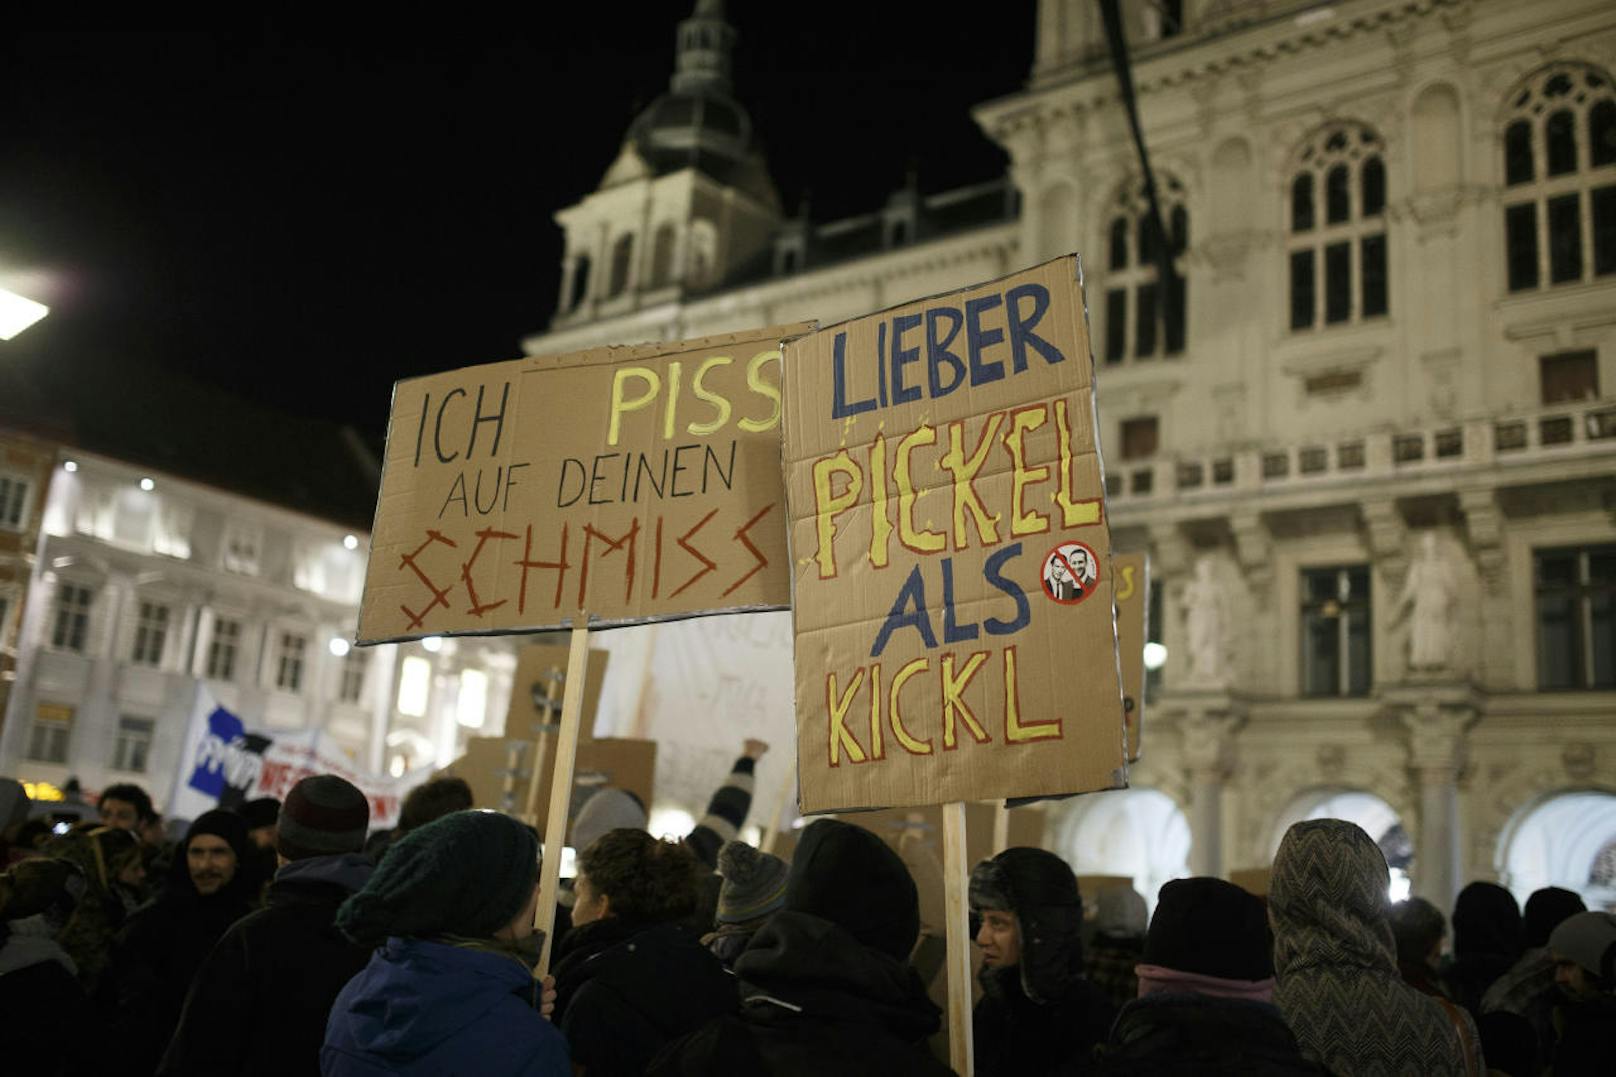 Spöttisch zeigten sich die Plakate gegen die FPÖ-Politiker. "Lieber Pickel als Kickl", war gegen Innenminister Herbert Kickl oder ...